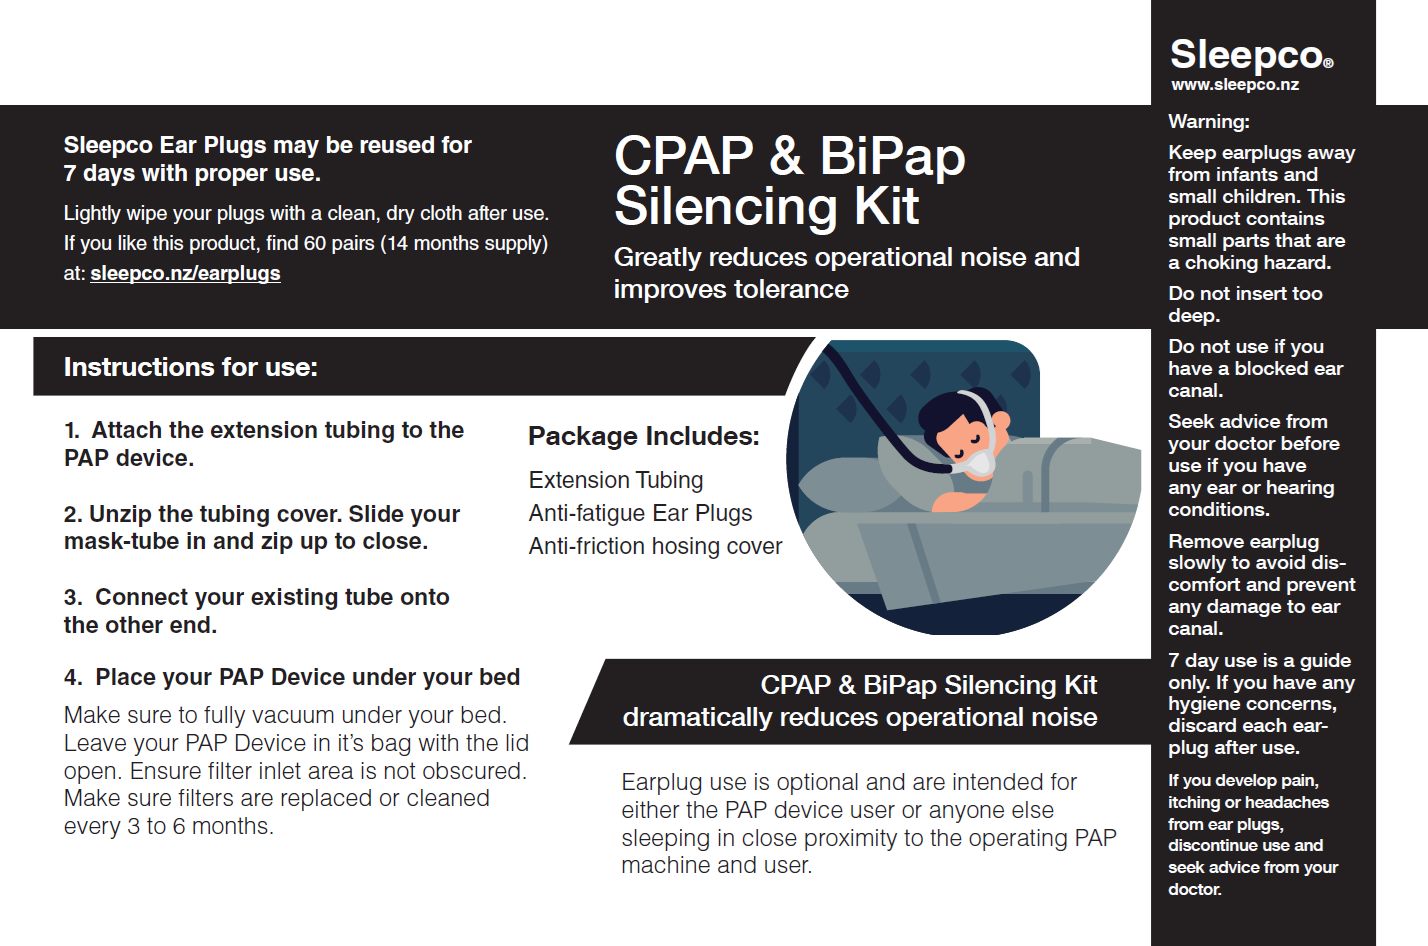 Sleepco CPAP 静音套件。降低 CPAP 操作噪音。